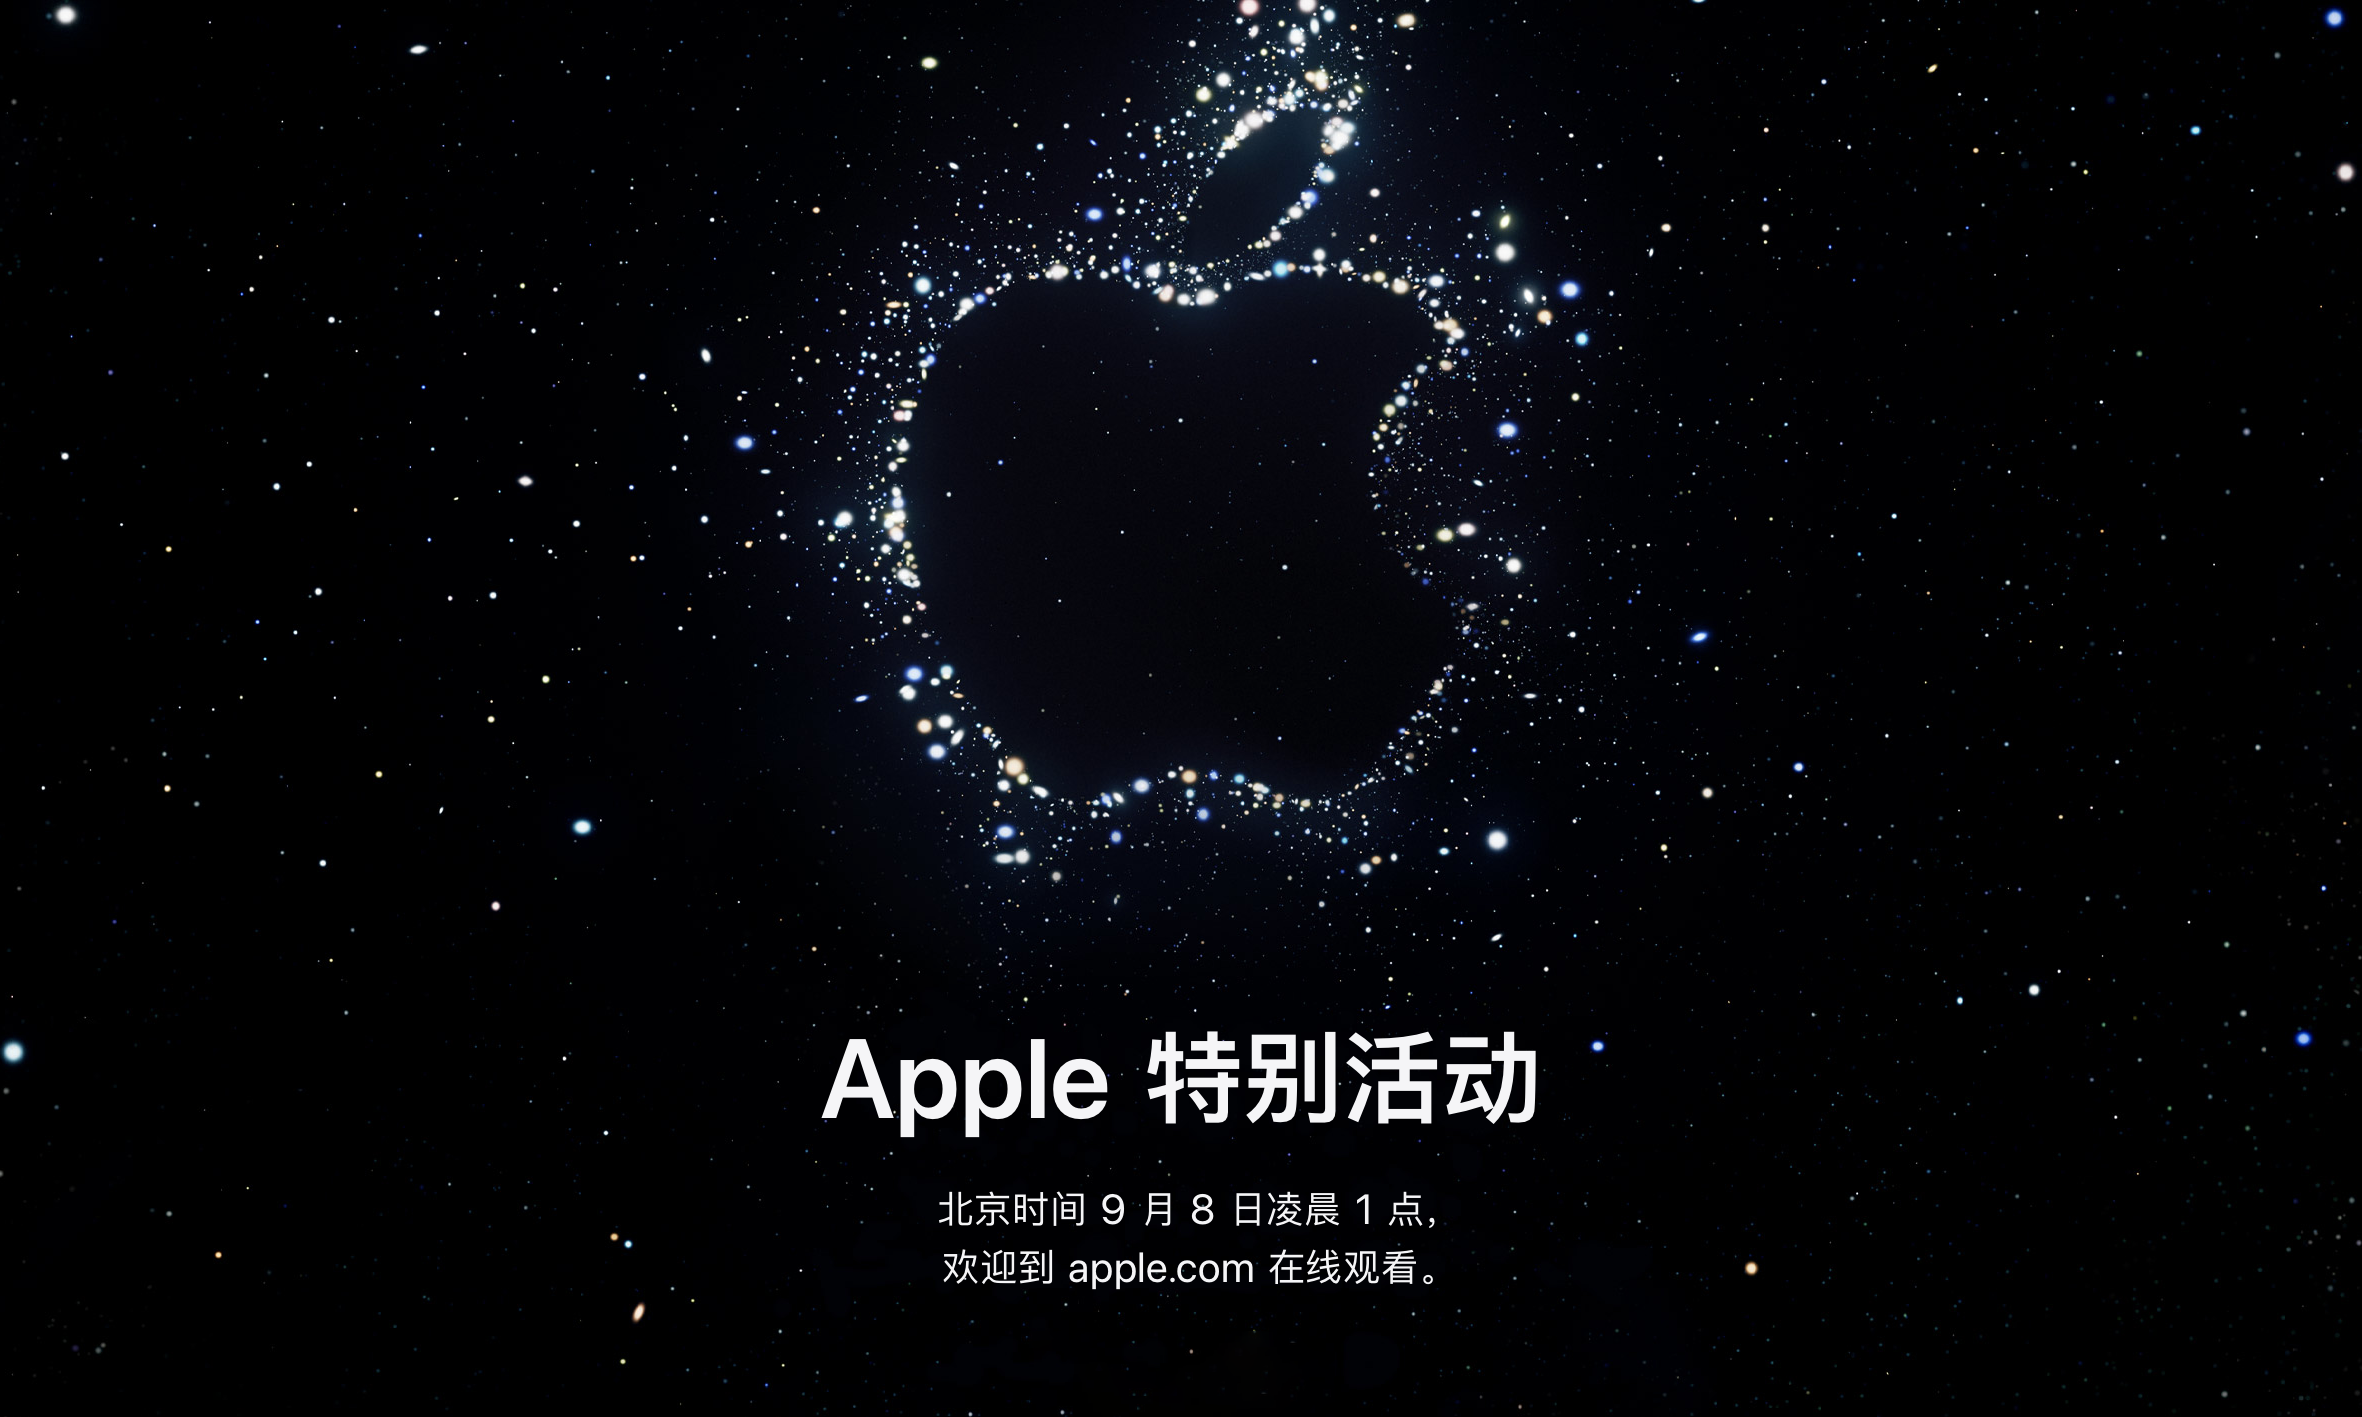 苹果宣布 9 月 8 日举办发布会